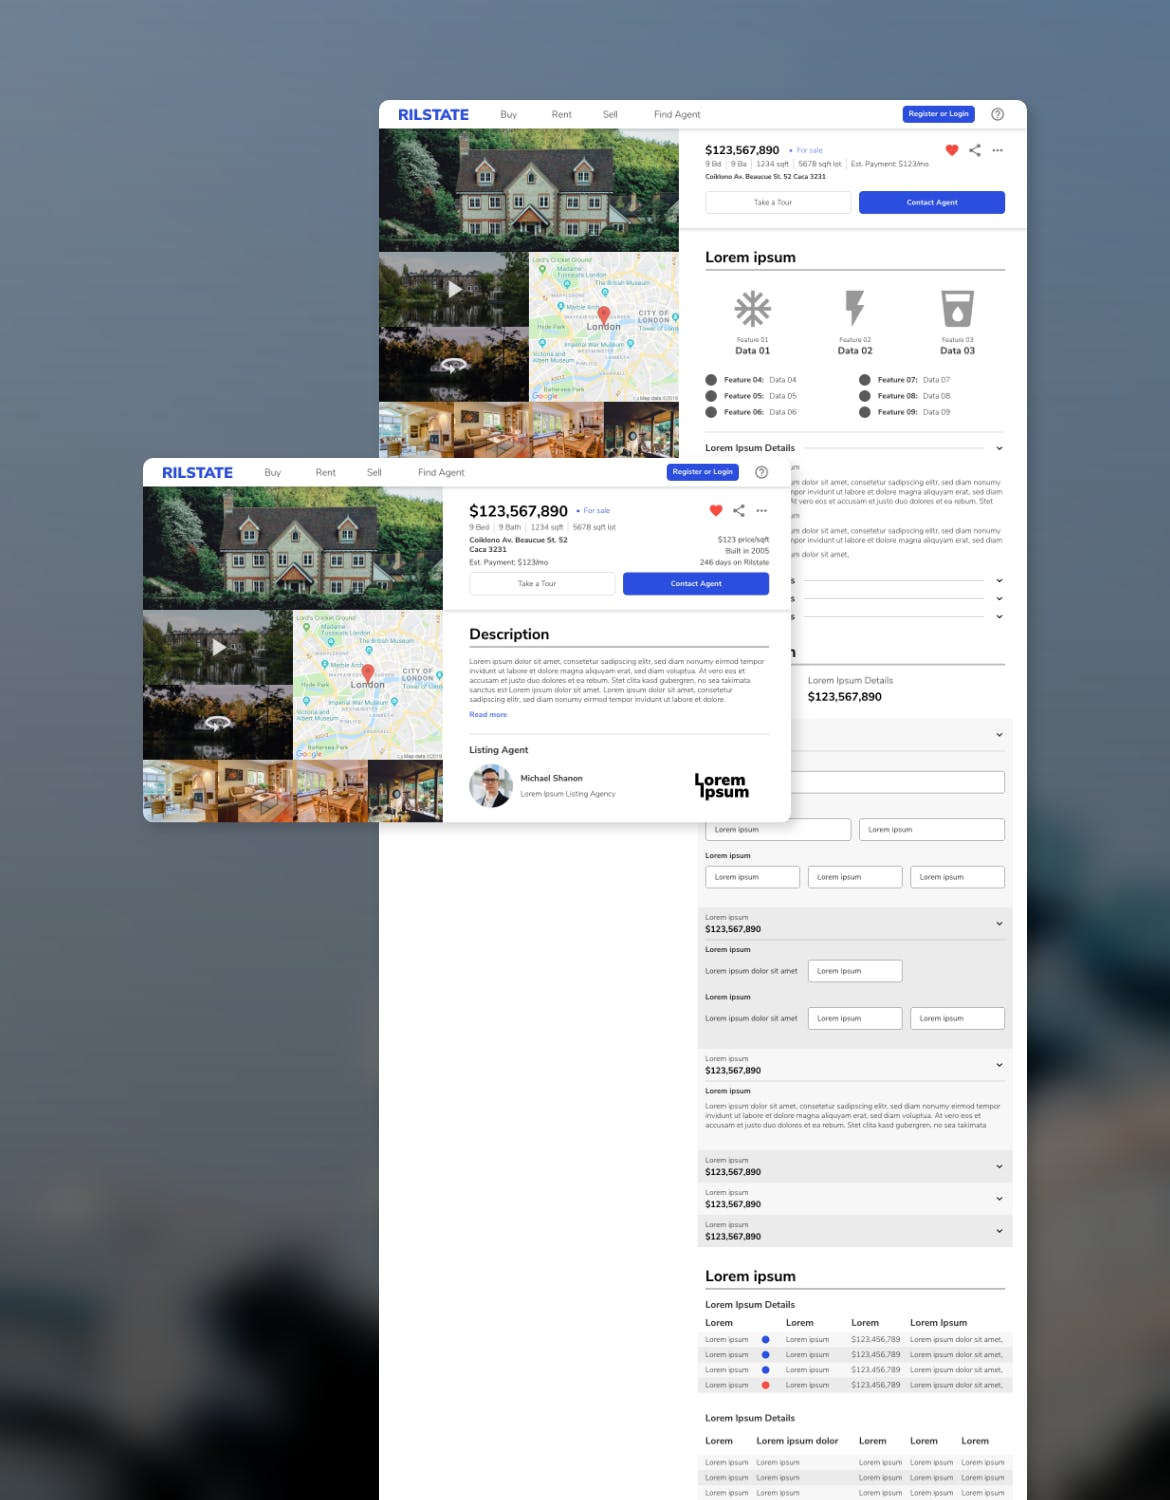 房地产租赁销售网站设计HTML模板第一素材精选 RILSTATE – Real Estate Homepage Template插图(4)